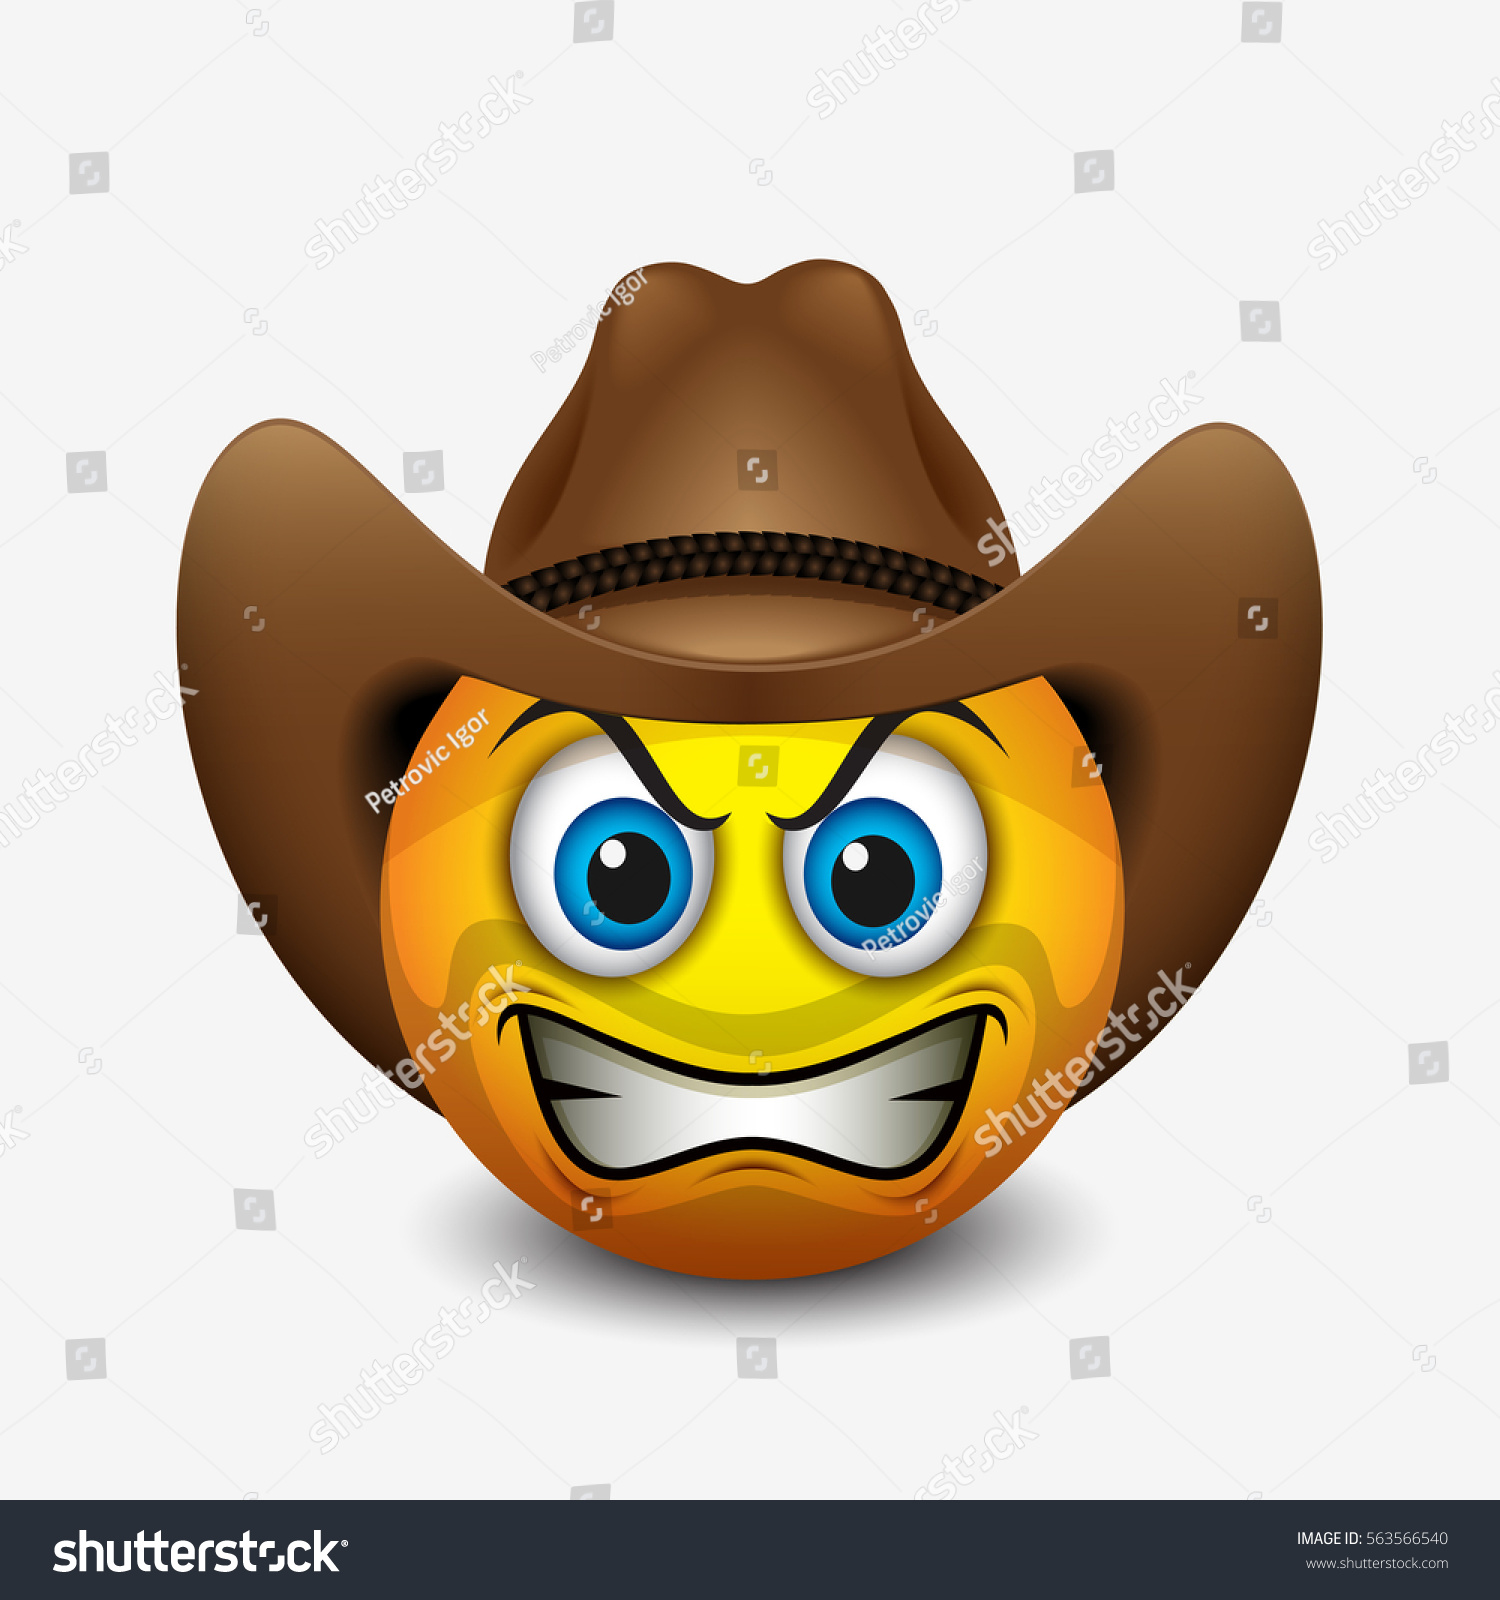 Cute Angry Cowboy Emoticon Emoji Vector Stock Vector 563566540 ...